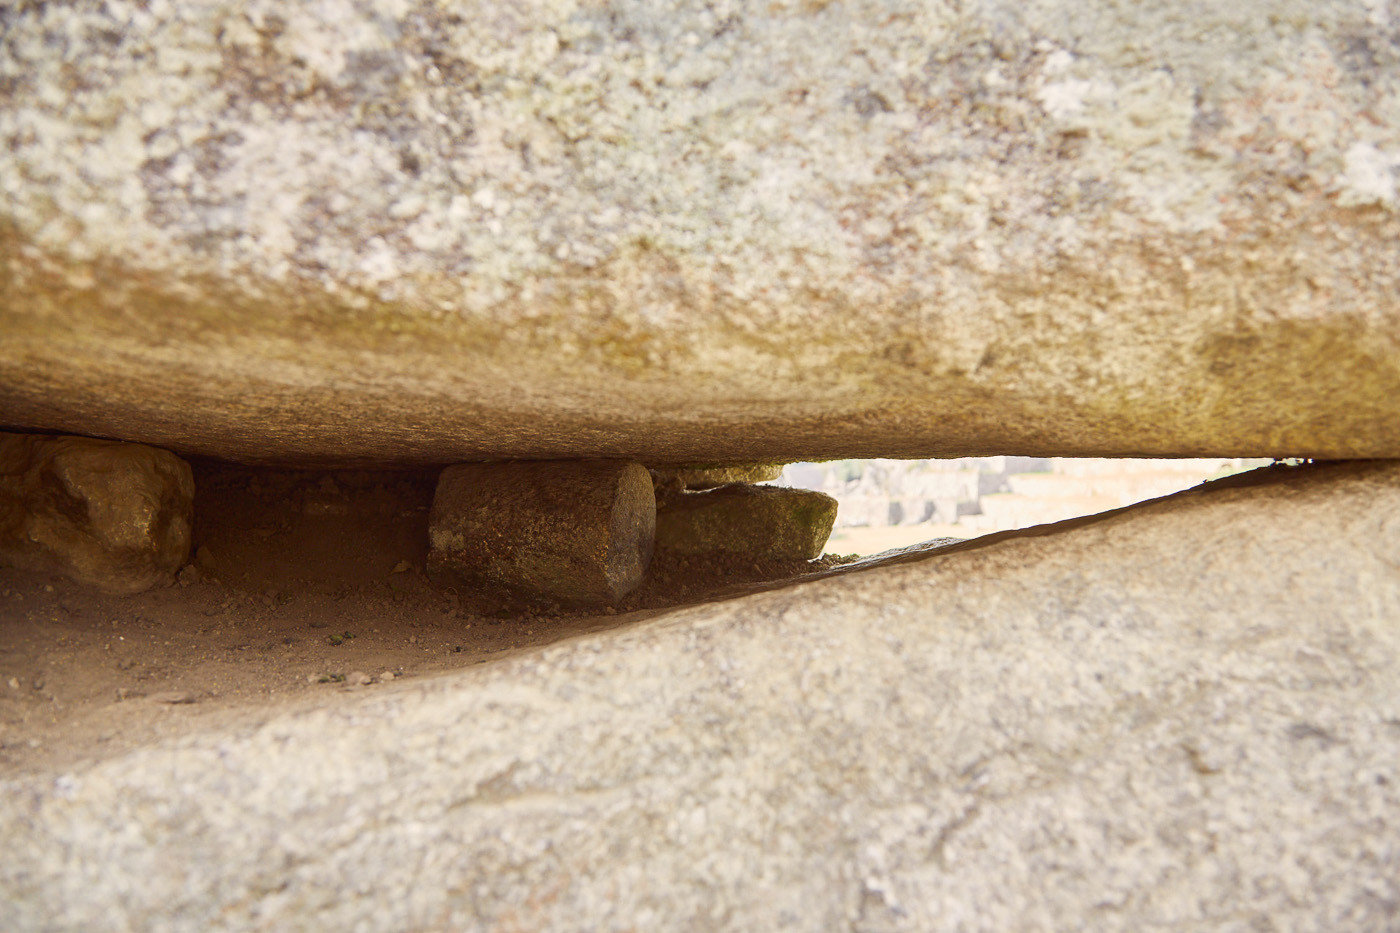 Kleinere Steine wurden wie Rollen verwendet, um die großen Brocken durch Machu Picchu zu transportieren